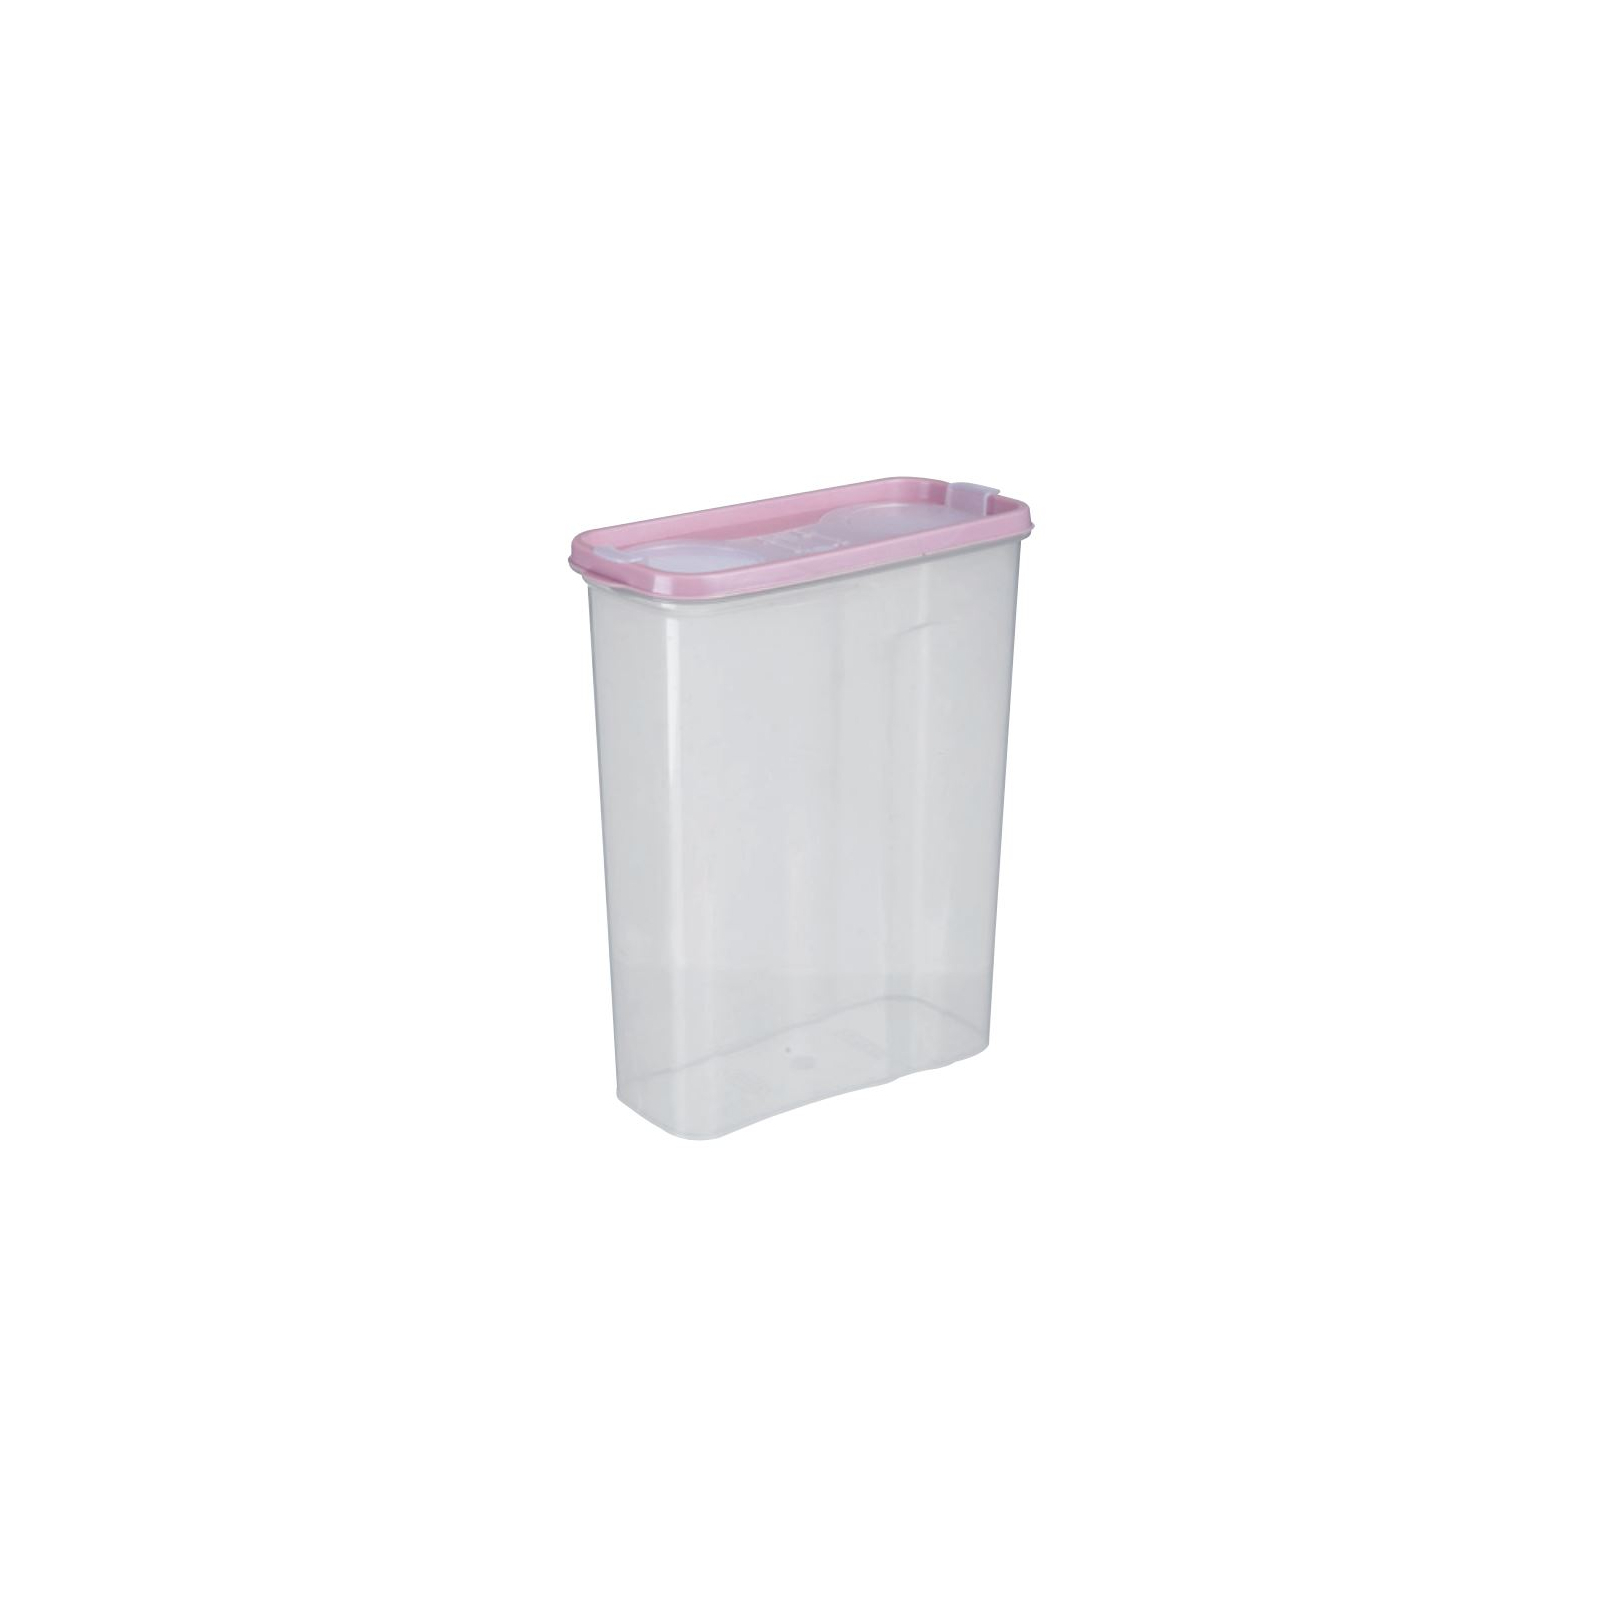 Пищевой контейнер Violet House Transparent 3,25 л (0550 Transparent д/сыпучих 3.25)